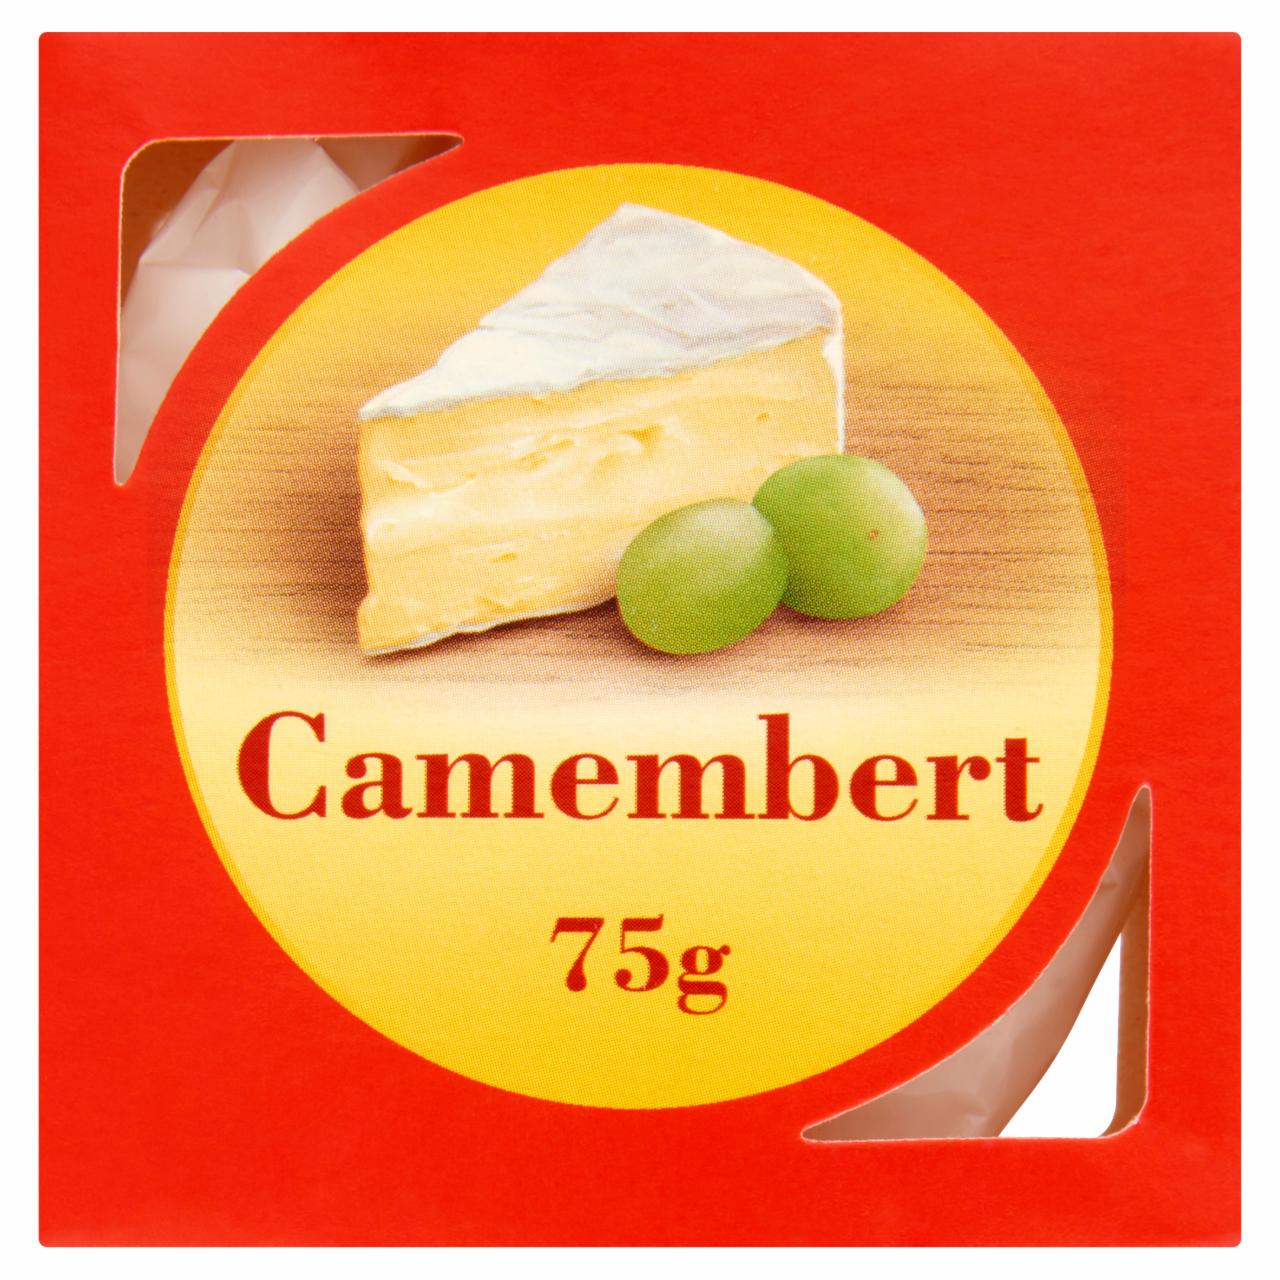 Képek - Camembert sajt 75 g